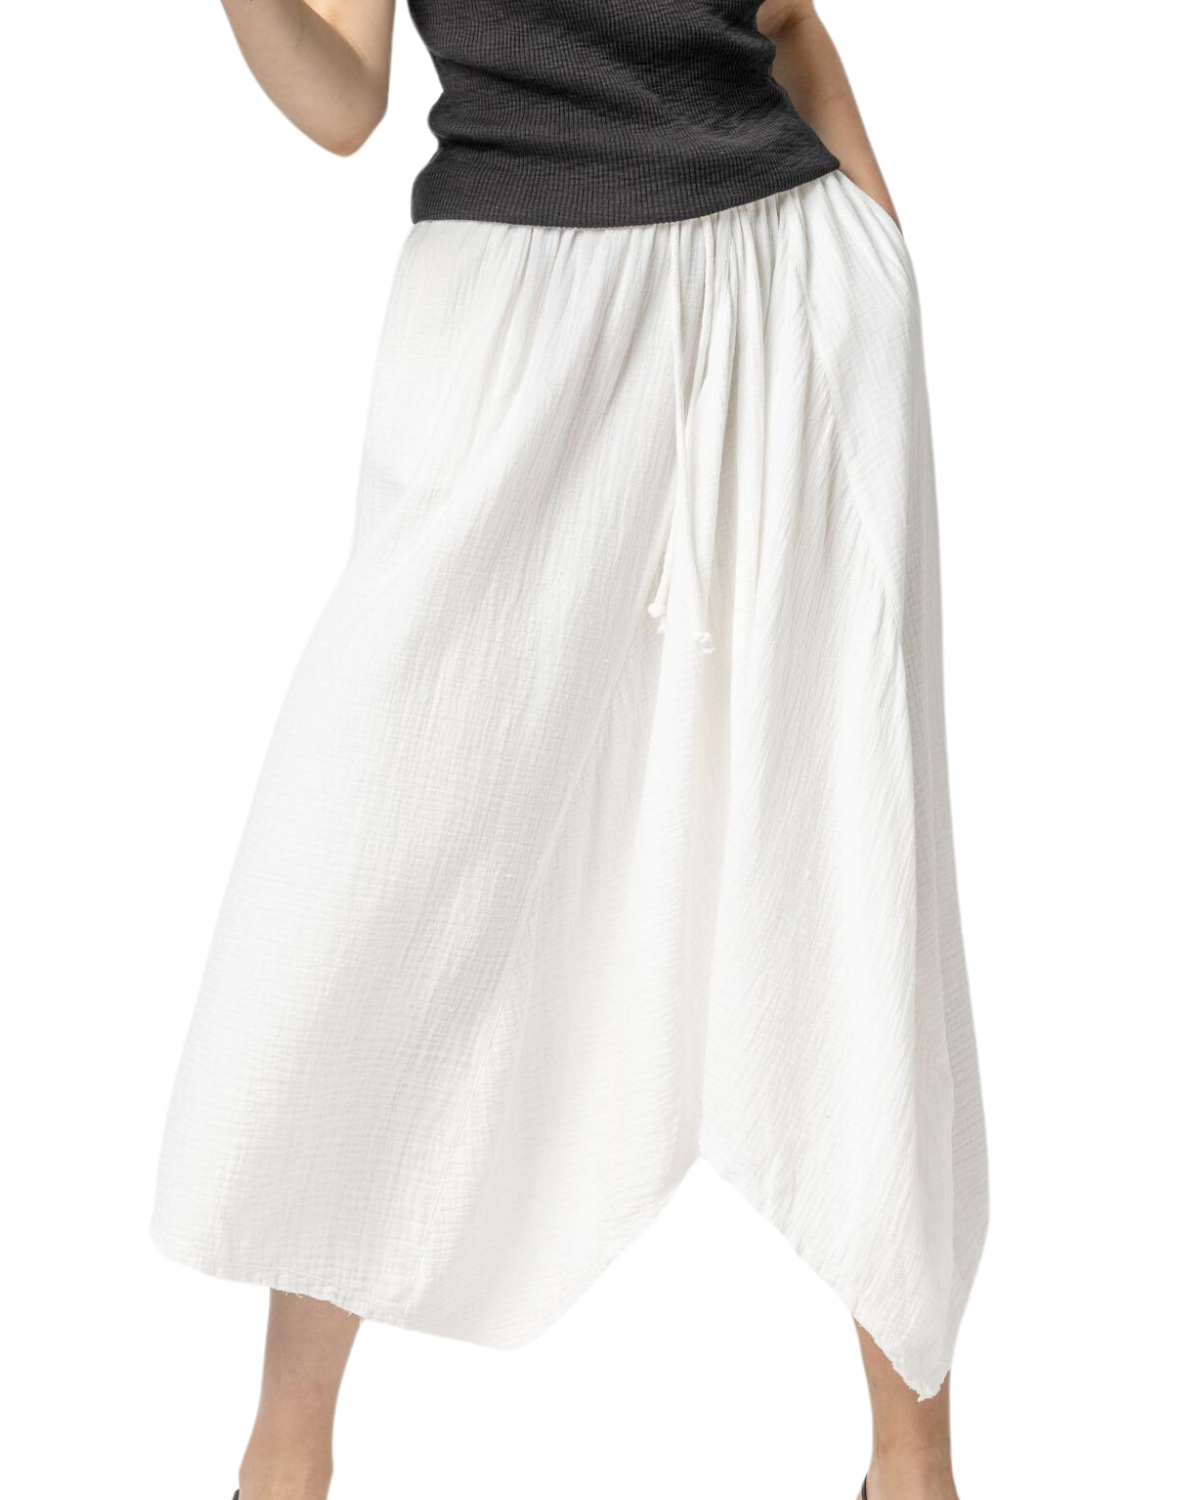 Gauze Waterfall Skirt (White)